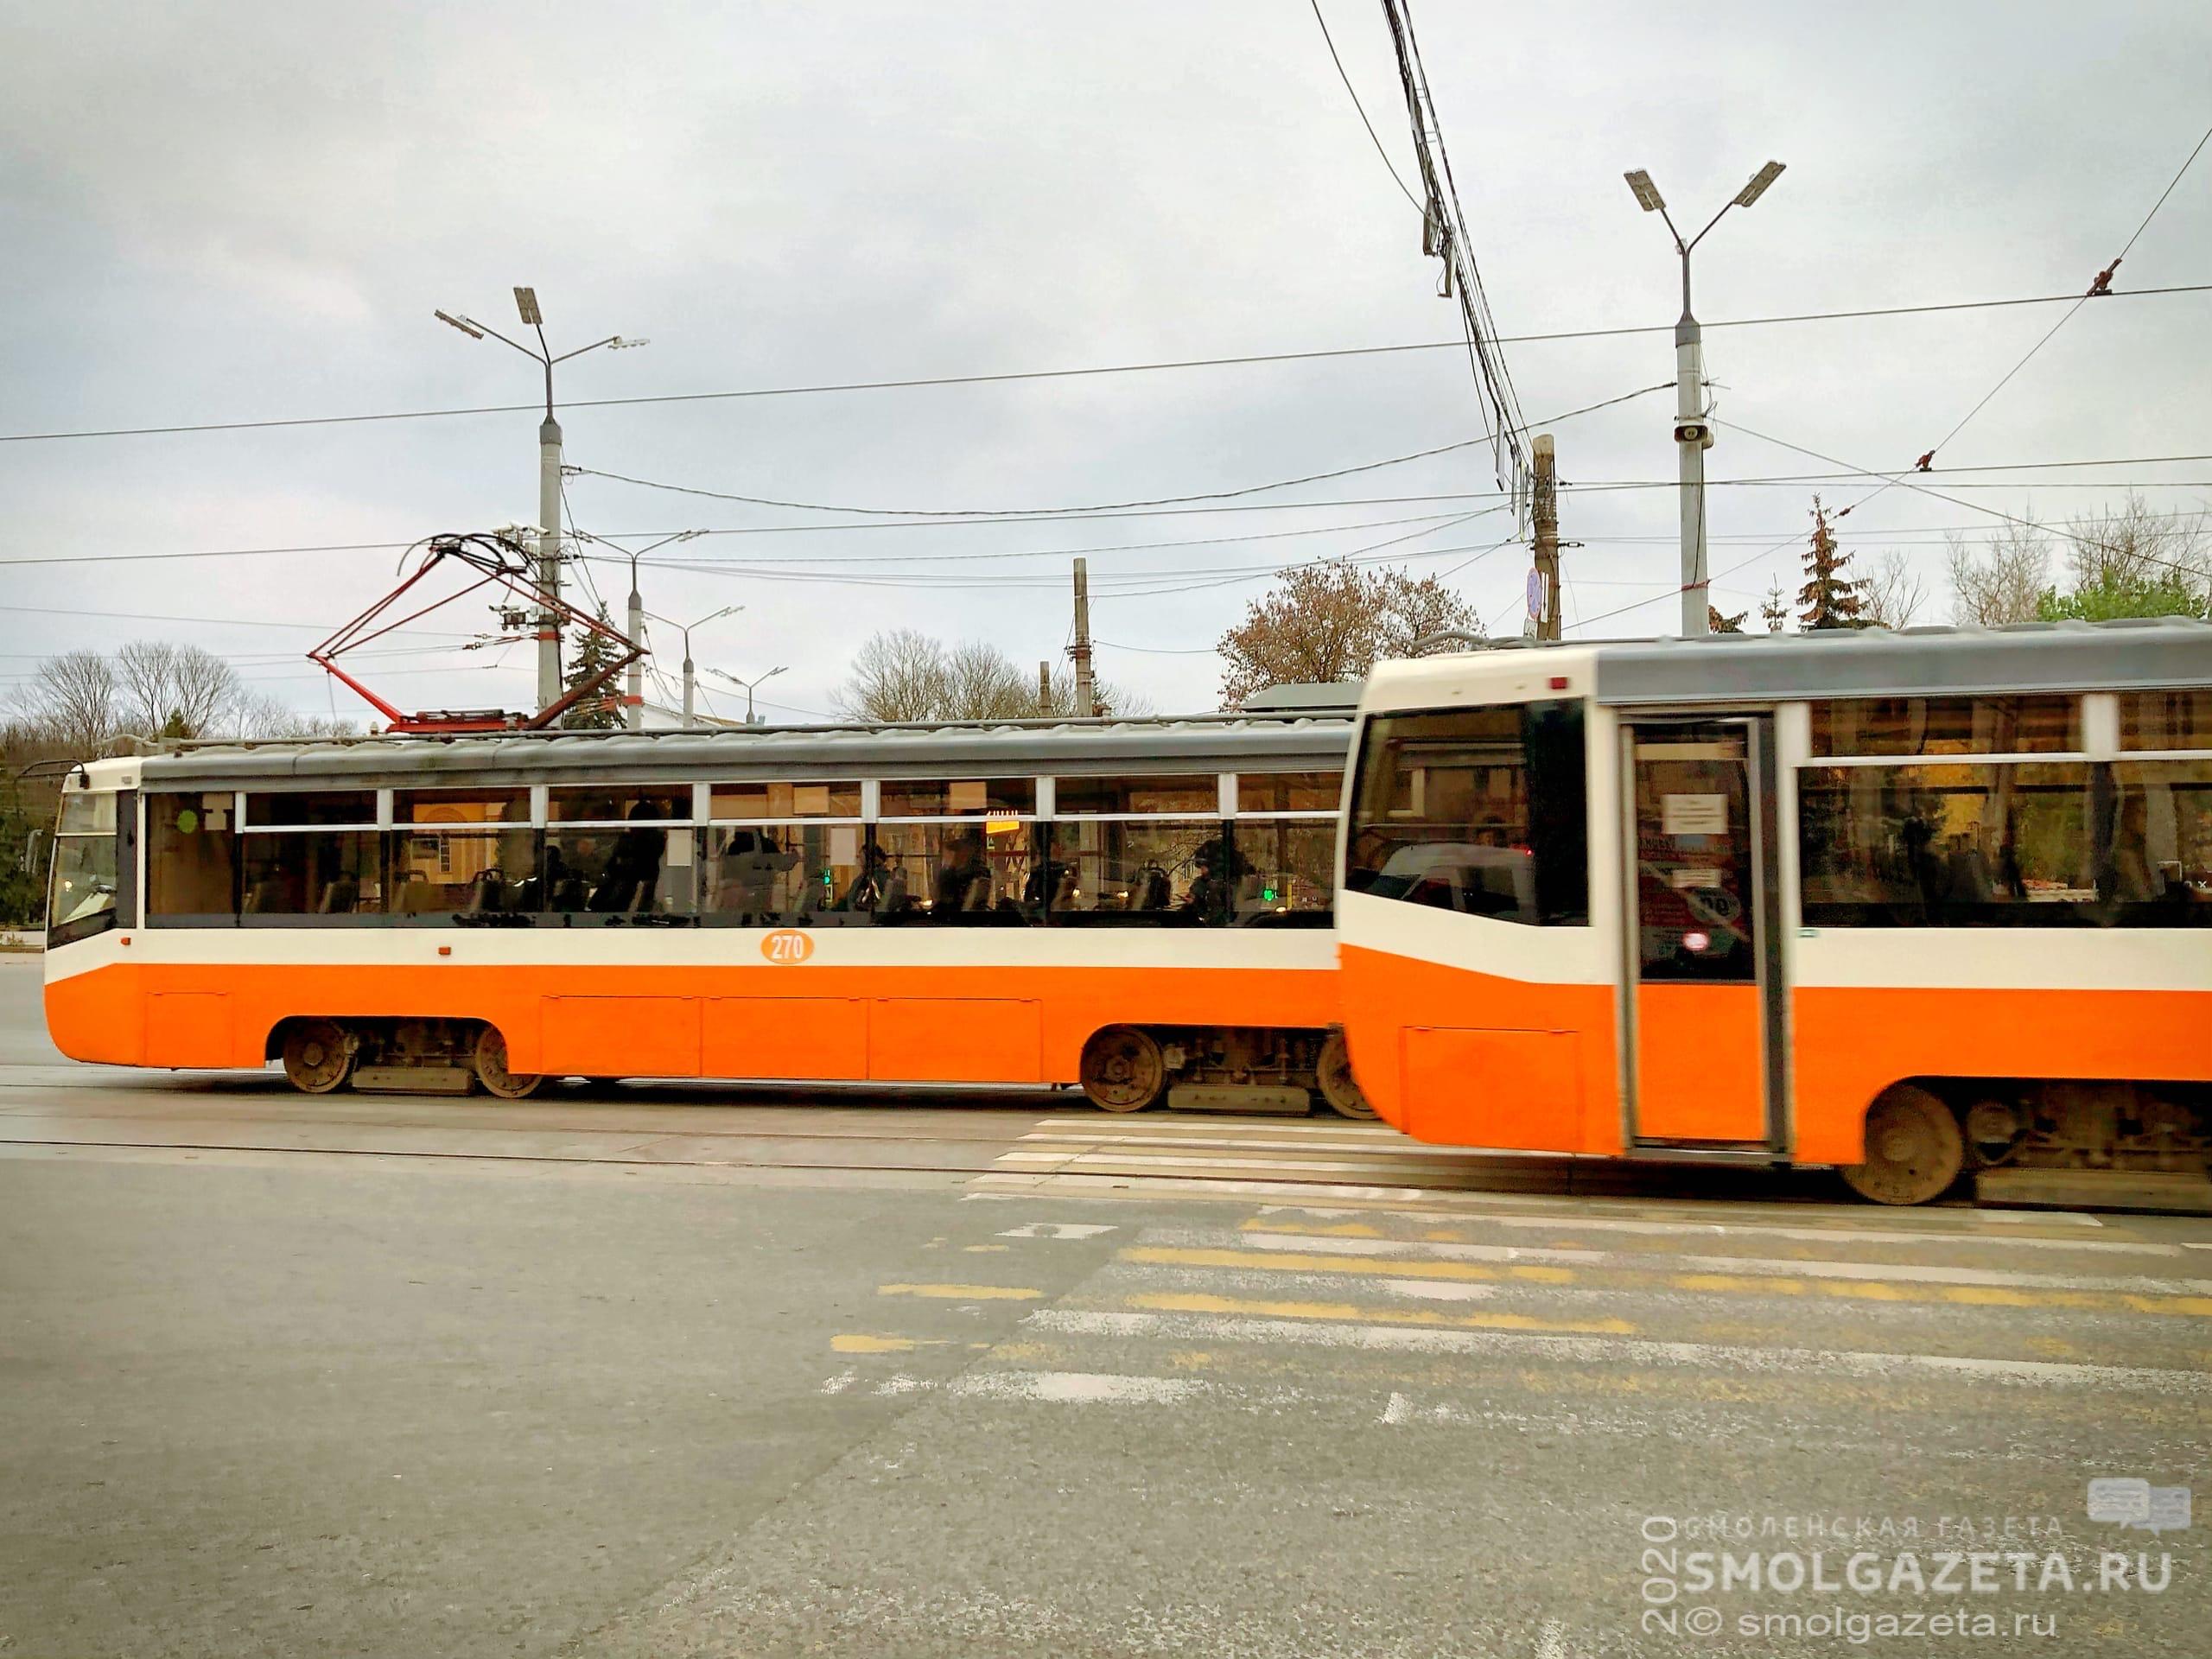 В Смоленске с 1 января подорожает проезд в общественном транспорте